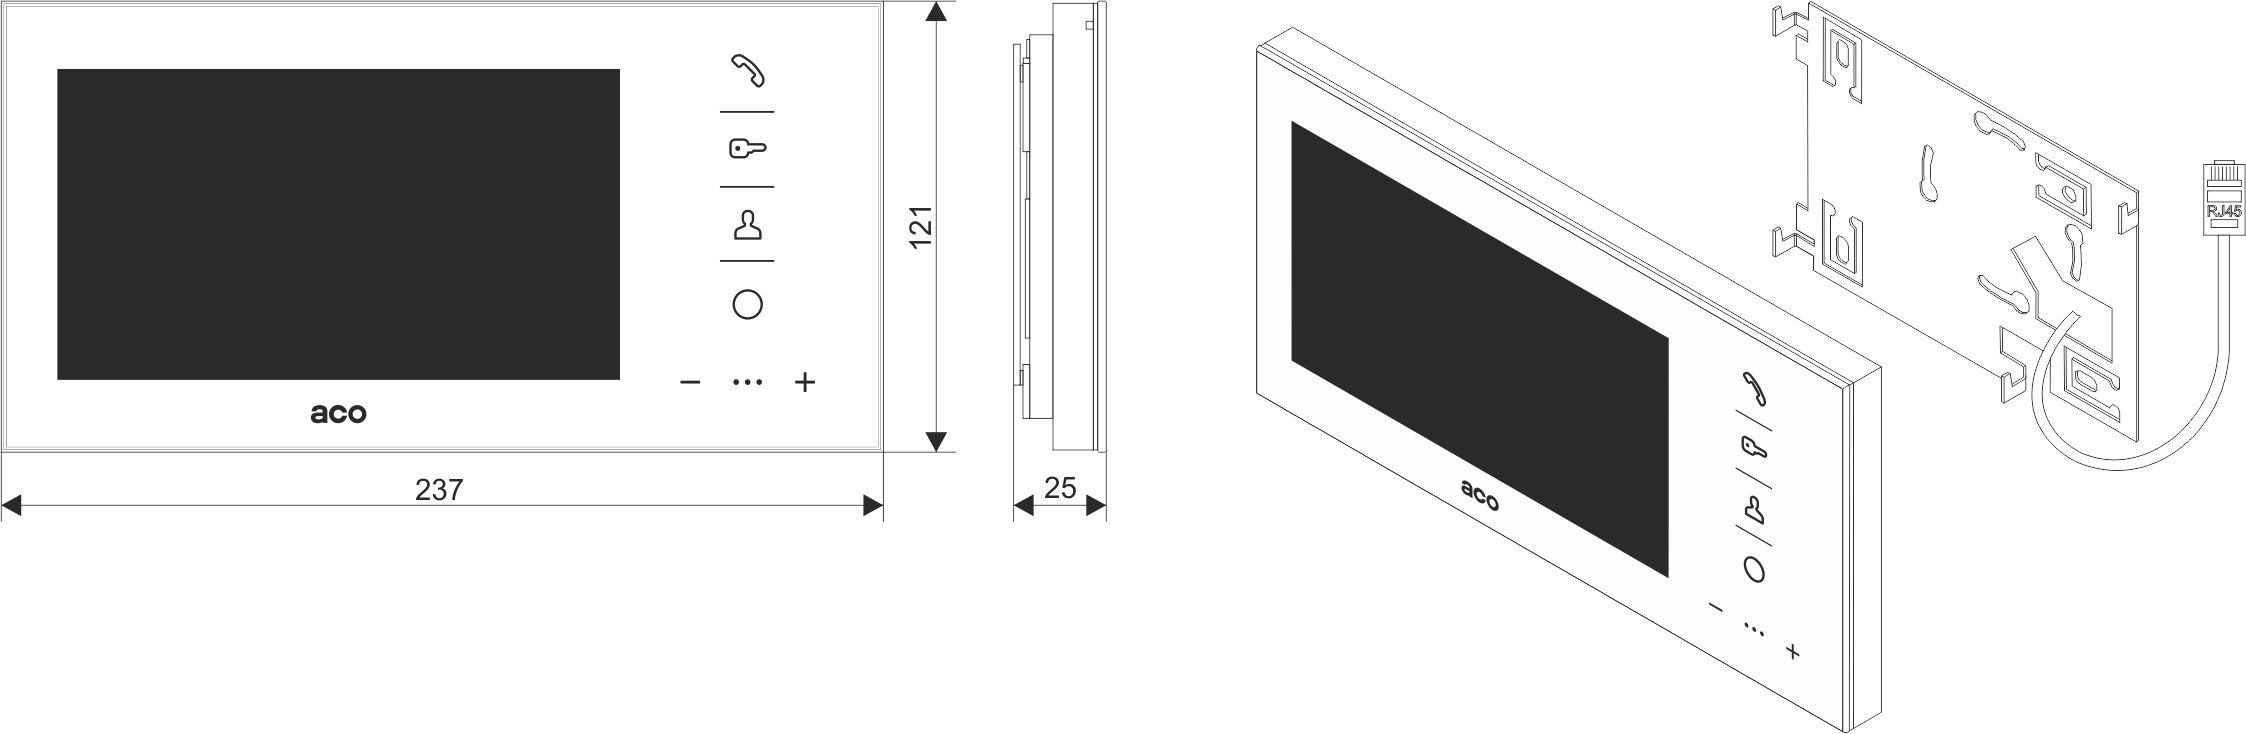 GLASS-PRO-7 BK Wideomonitor cyfrowy, głośnomówiący ze szklanym frontem i kolorowym wyświetlaczem 7’’ - Wymiary